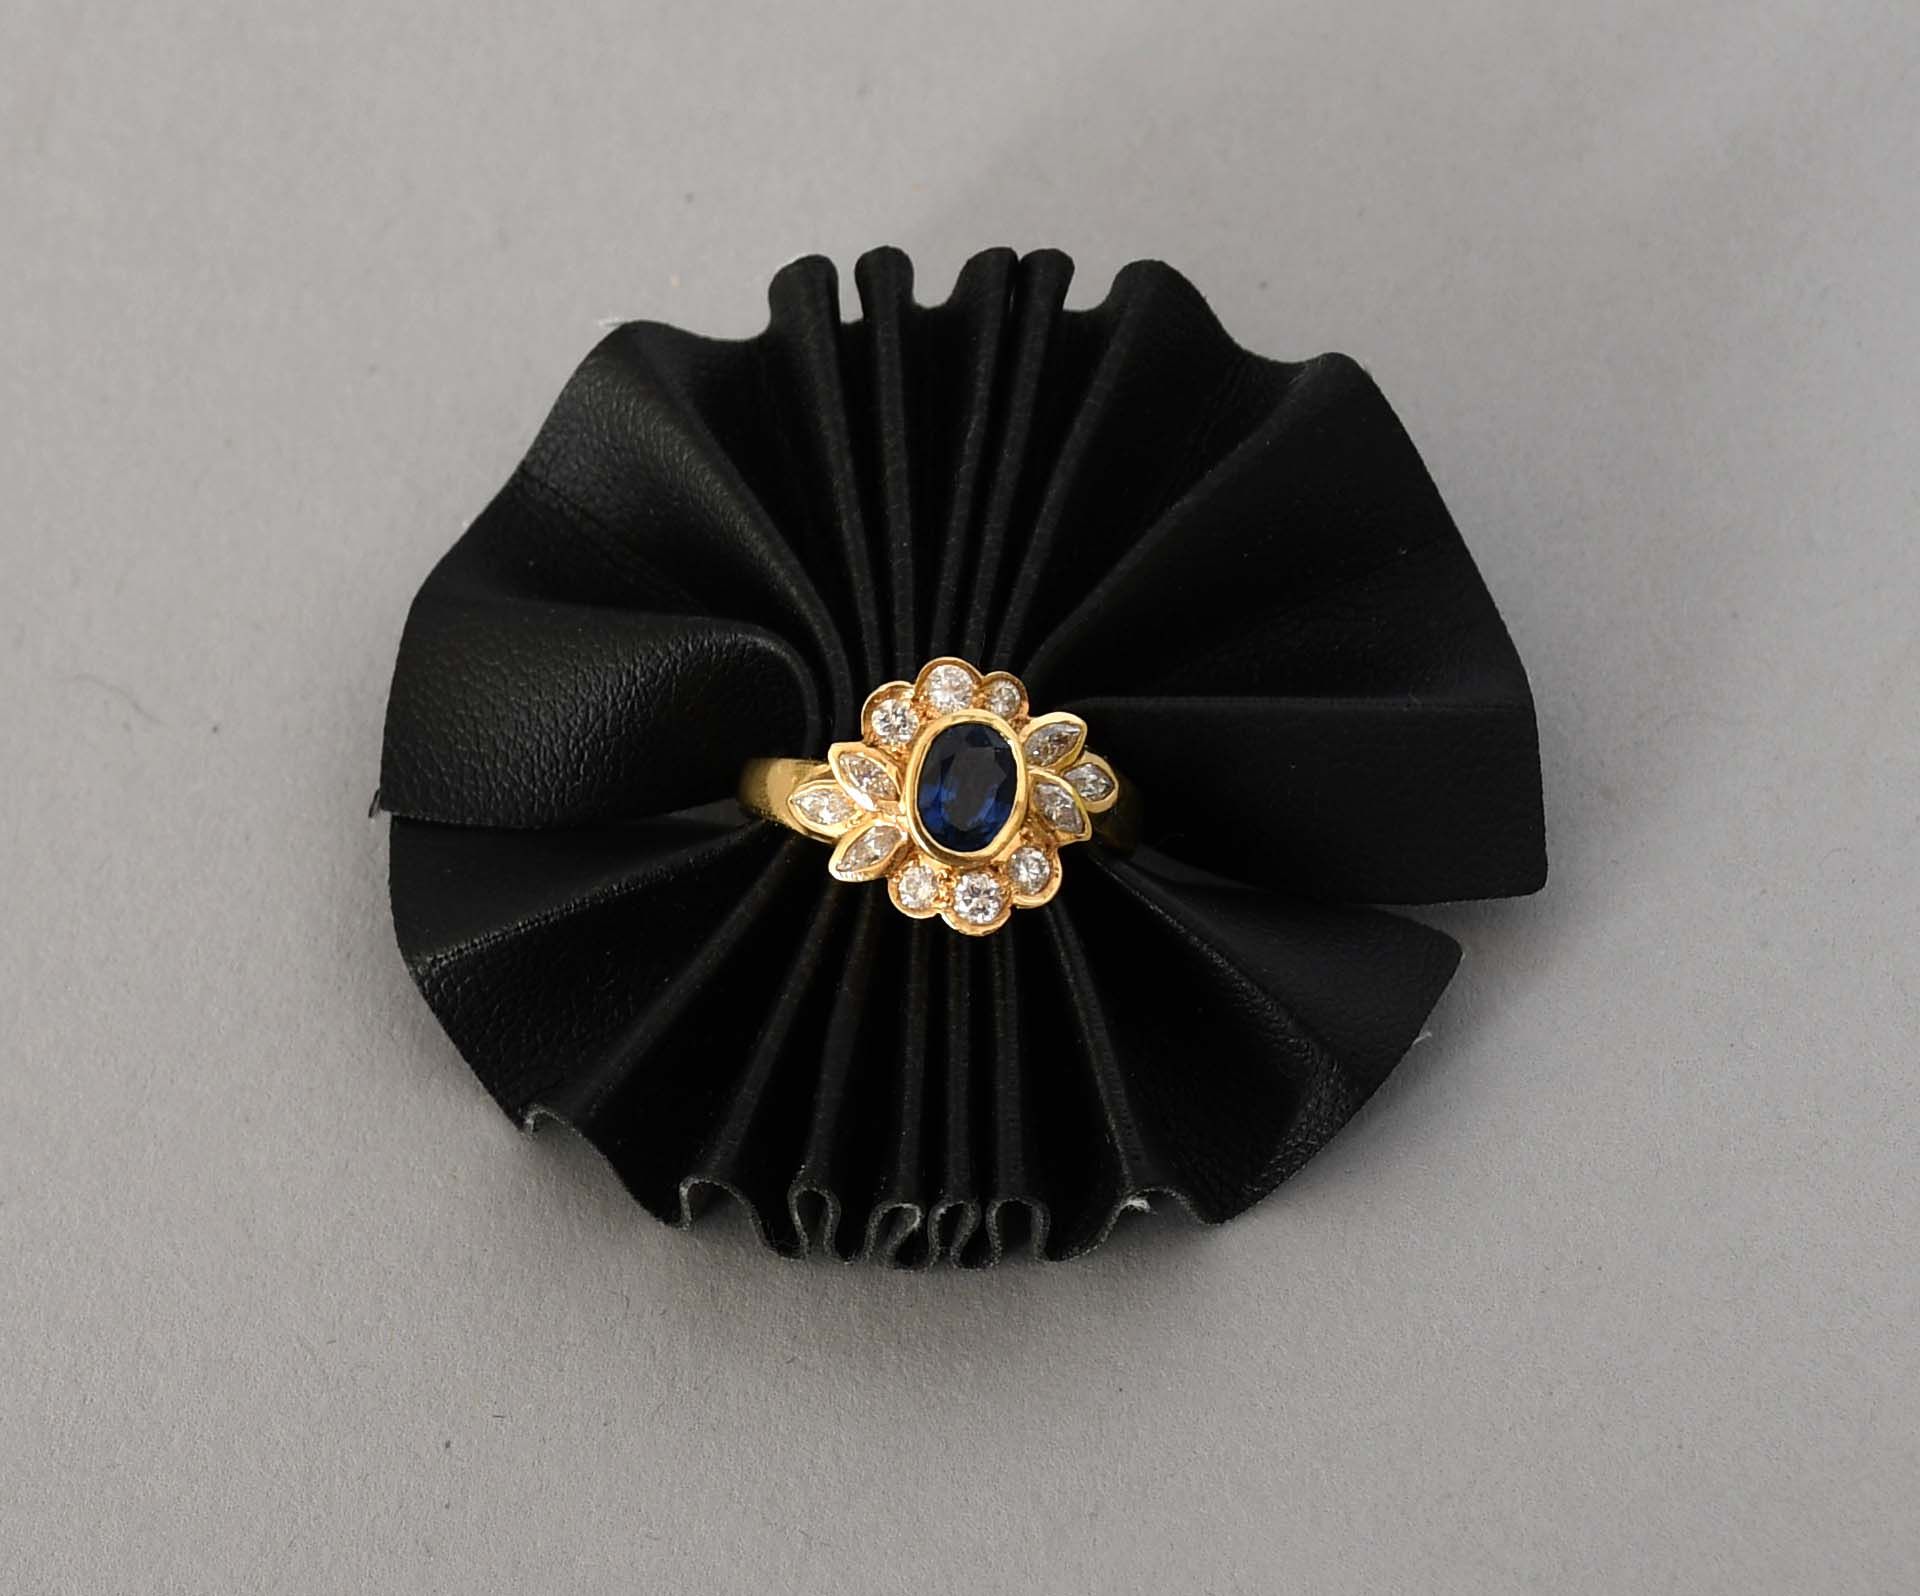 Null 珠宝首饰

戒指 "花"，18克拉黄金，镶嵌有一颗蓝色宝石（可能是蓝宝石），周围有亮片。总重量：+5,4克。